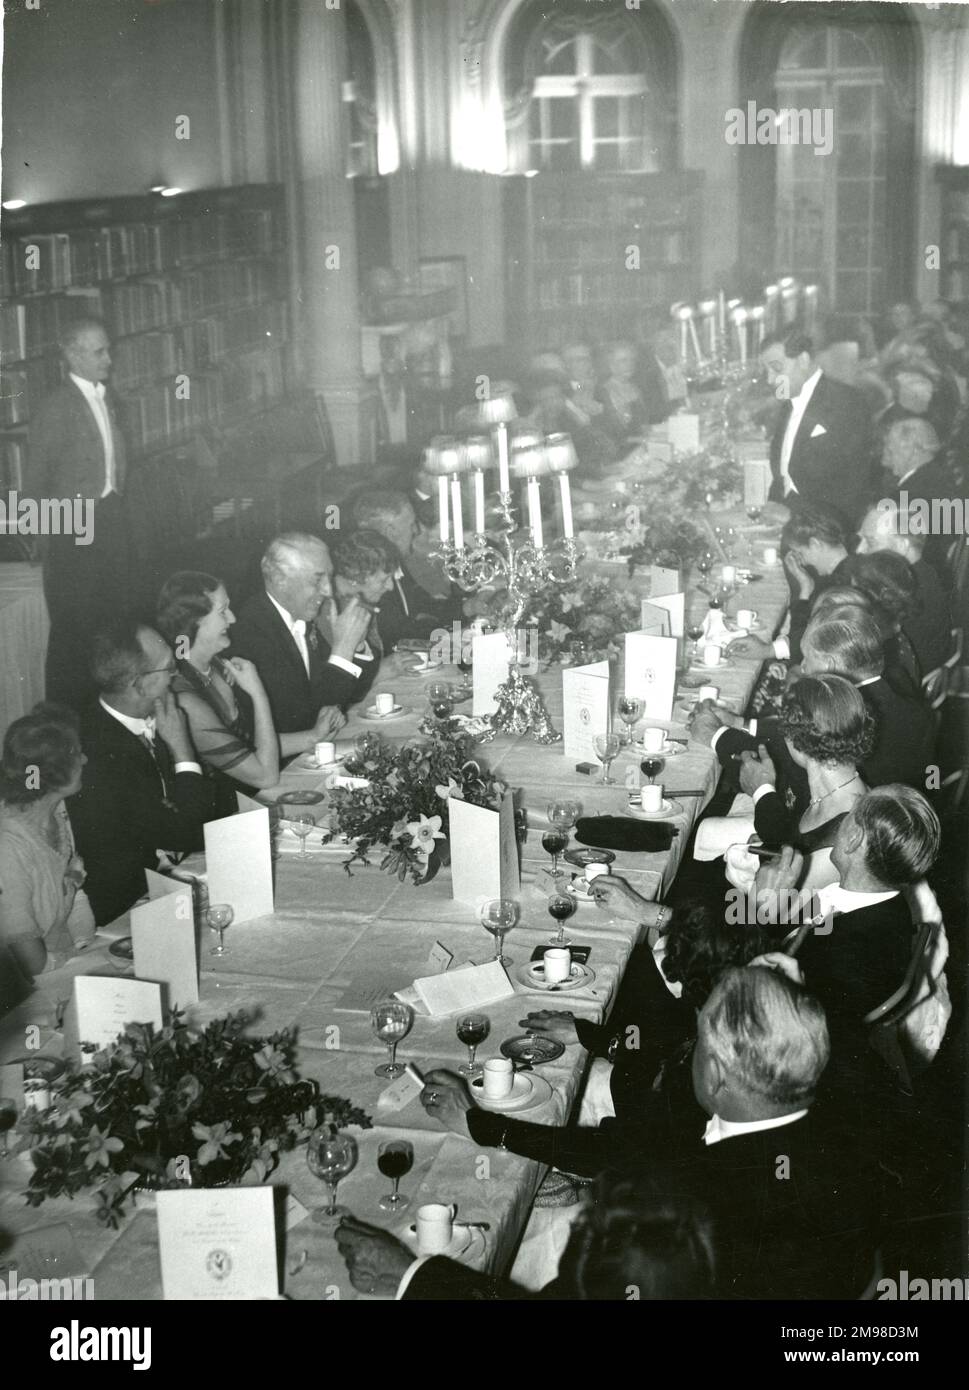 Die Royal Aeronautical Society veranstaltete 1949 ein Dinner im No. 4 Hamilton Place, um die Vergabe ihrer königlichen Charta vom 22. Dezember 1948 zu feiern. Re. Hon G.R. Strauss, MP, spricht nach dem Essen. Stockfoto